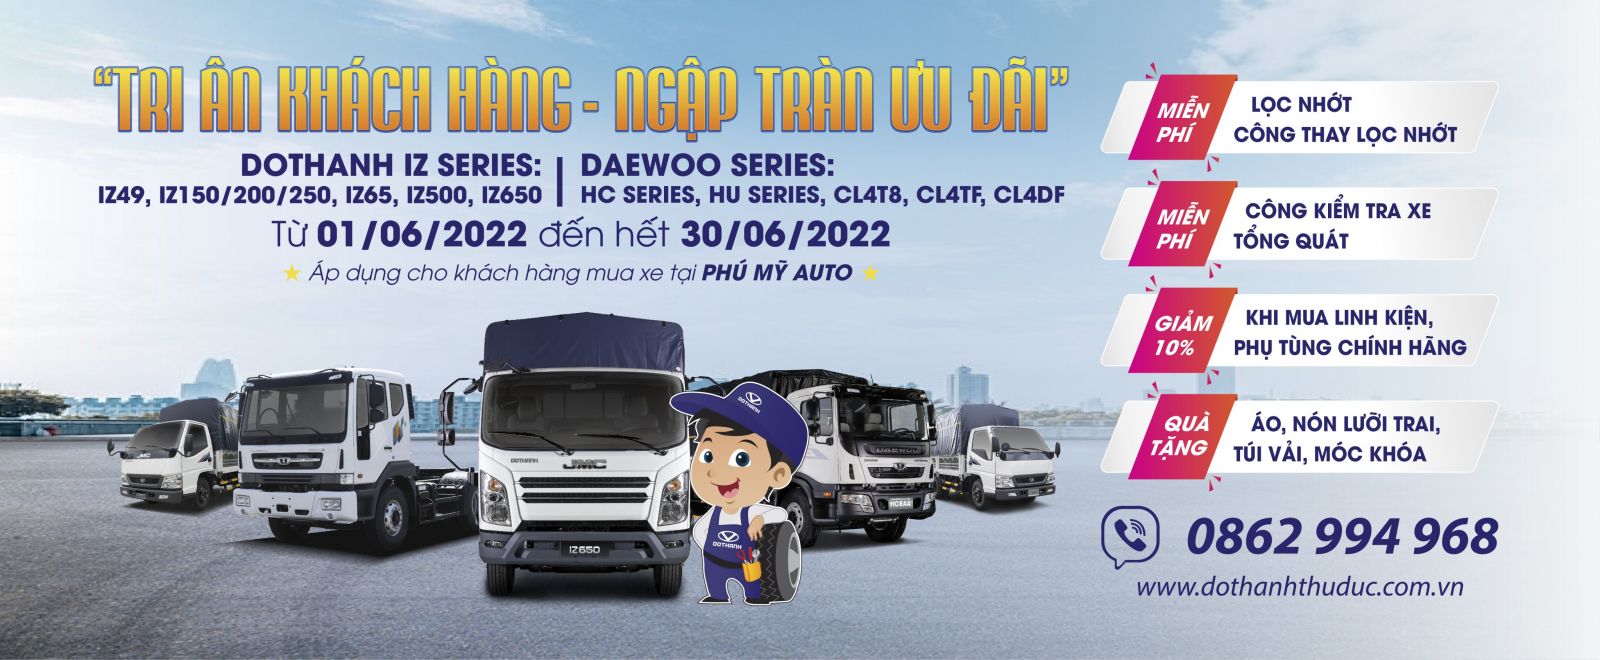 Chương trình ưu đãi dịch vụ “Tri ân khách hàng - Ngập tràn ưu đãi” dành cho mẫu xe Đô Thành IZ và Daewoo Trucks